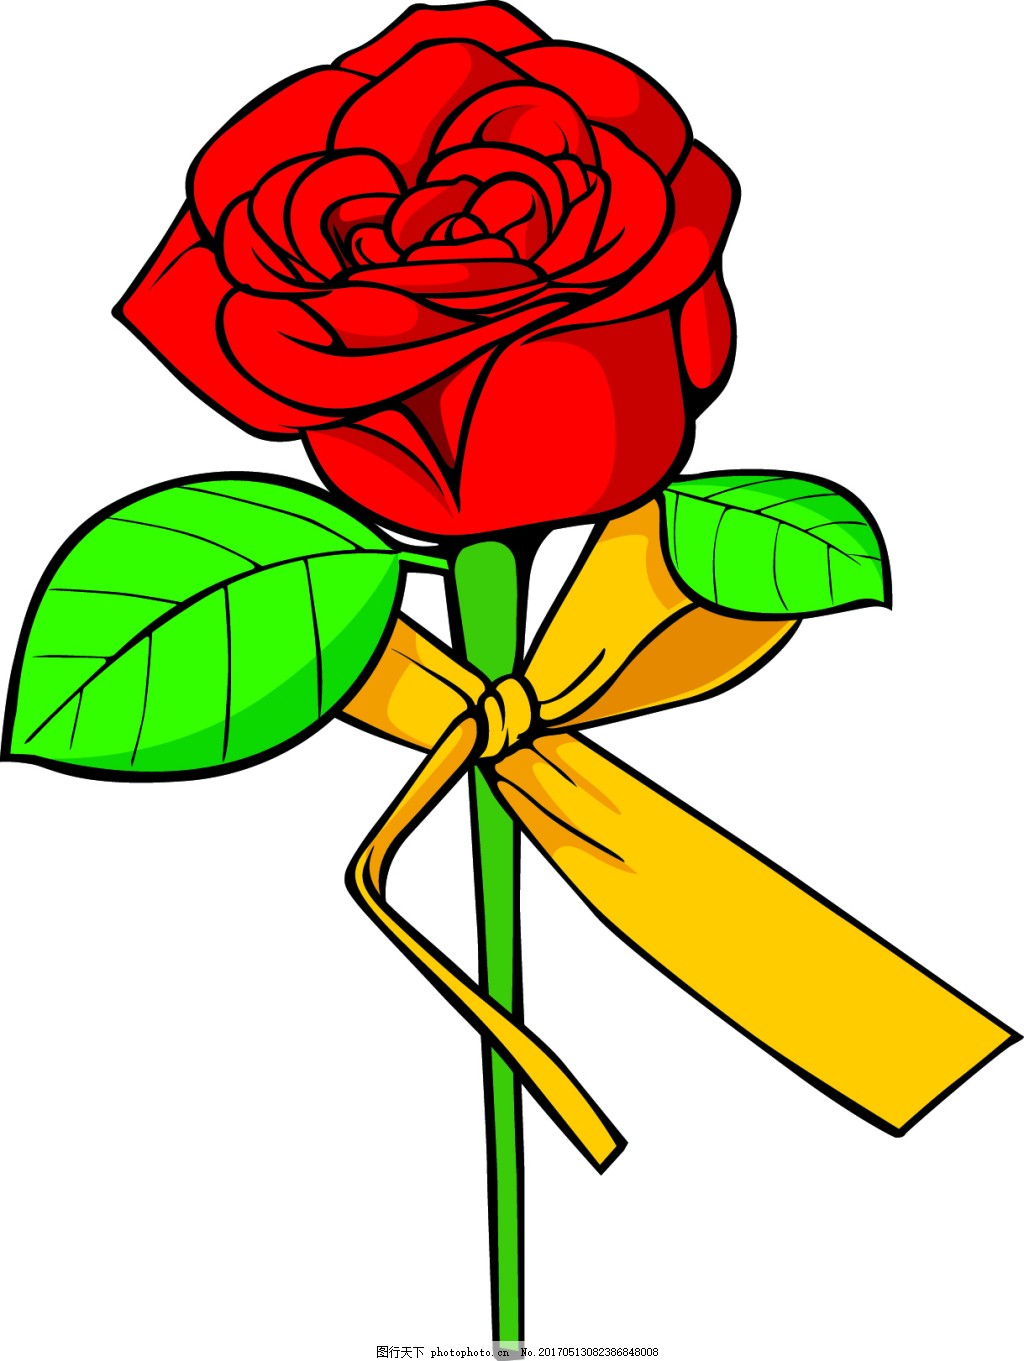 盒子里拿玫瑰花的男孩图片素材-编号14799352-图行天下